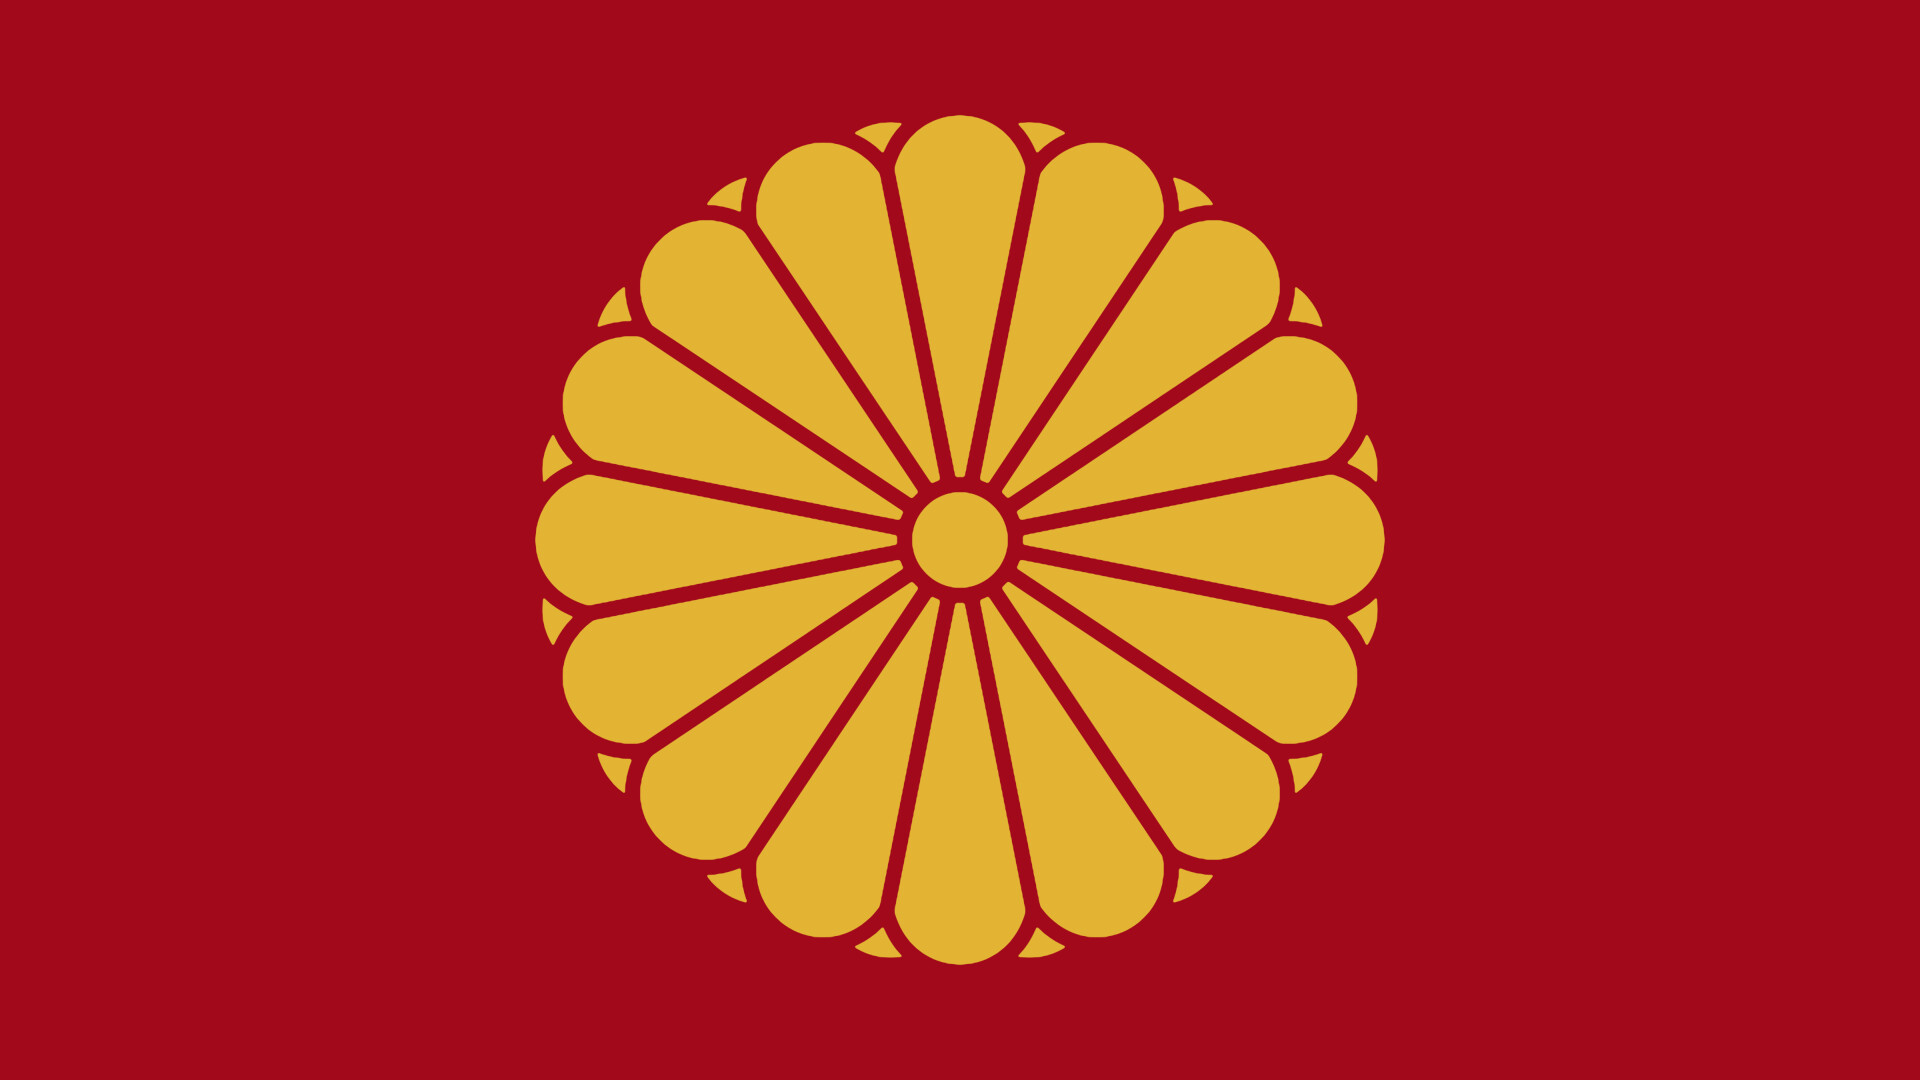 ArtStation - Japan Empire